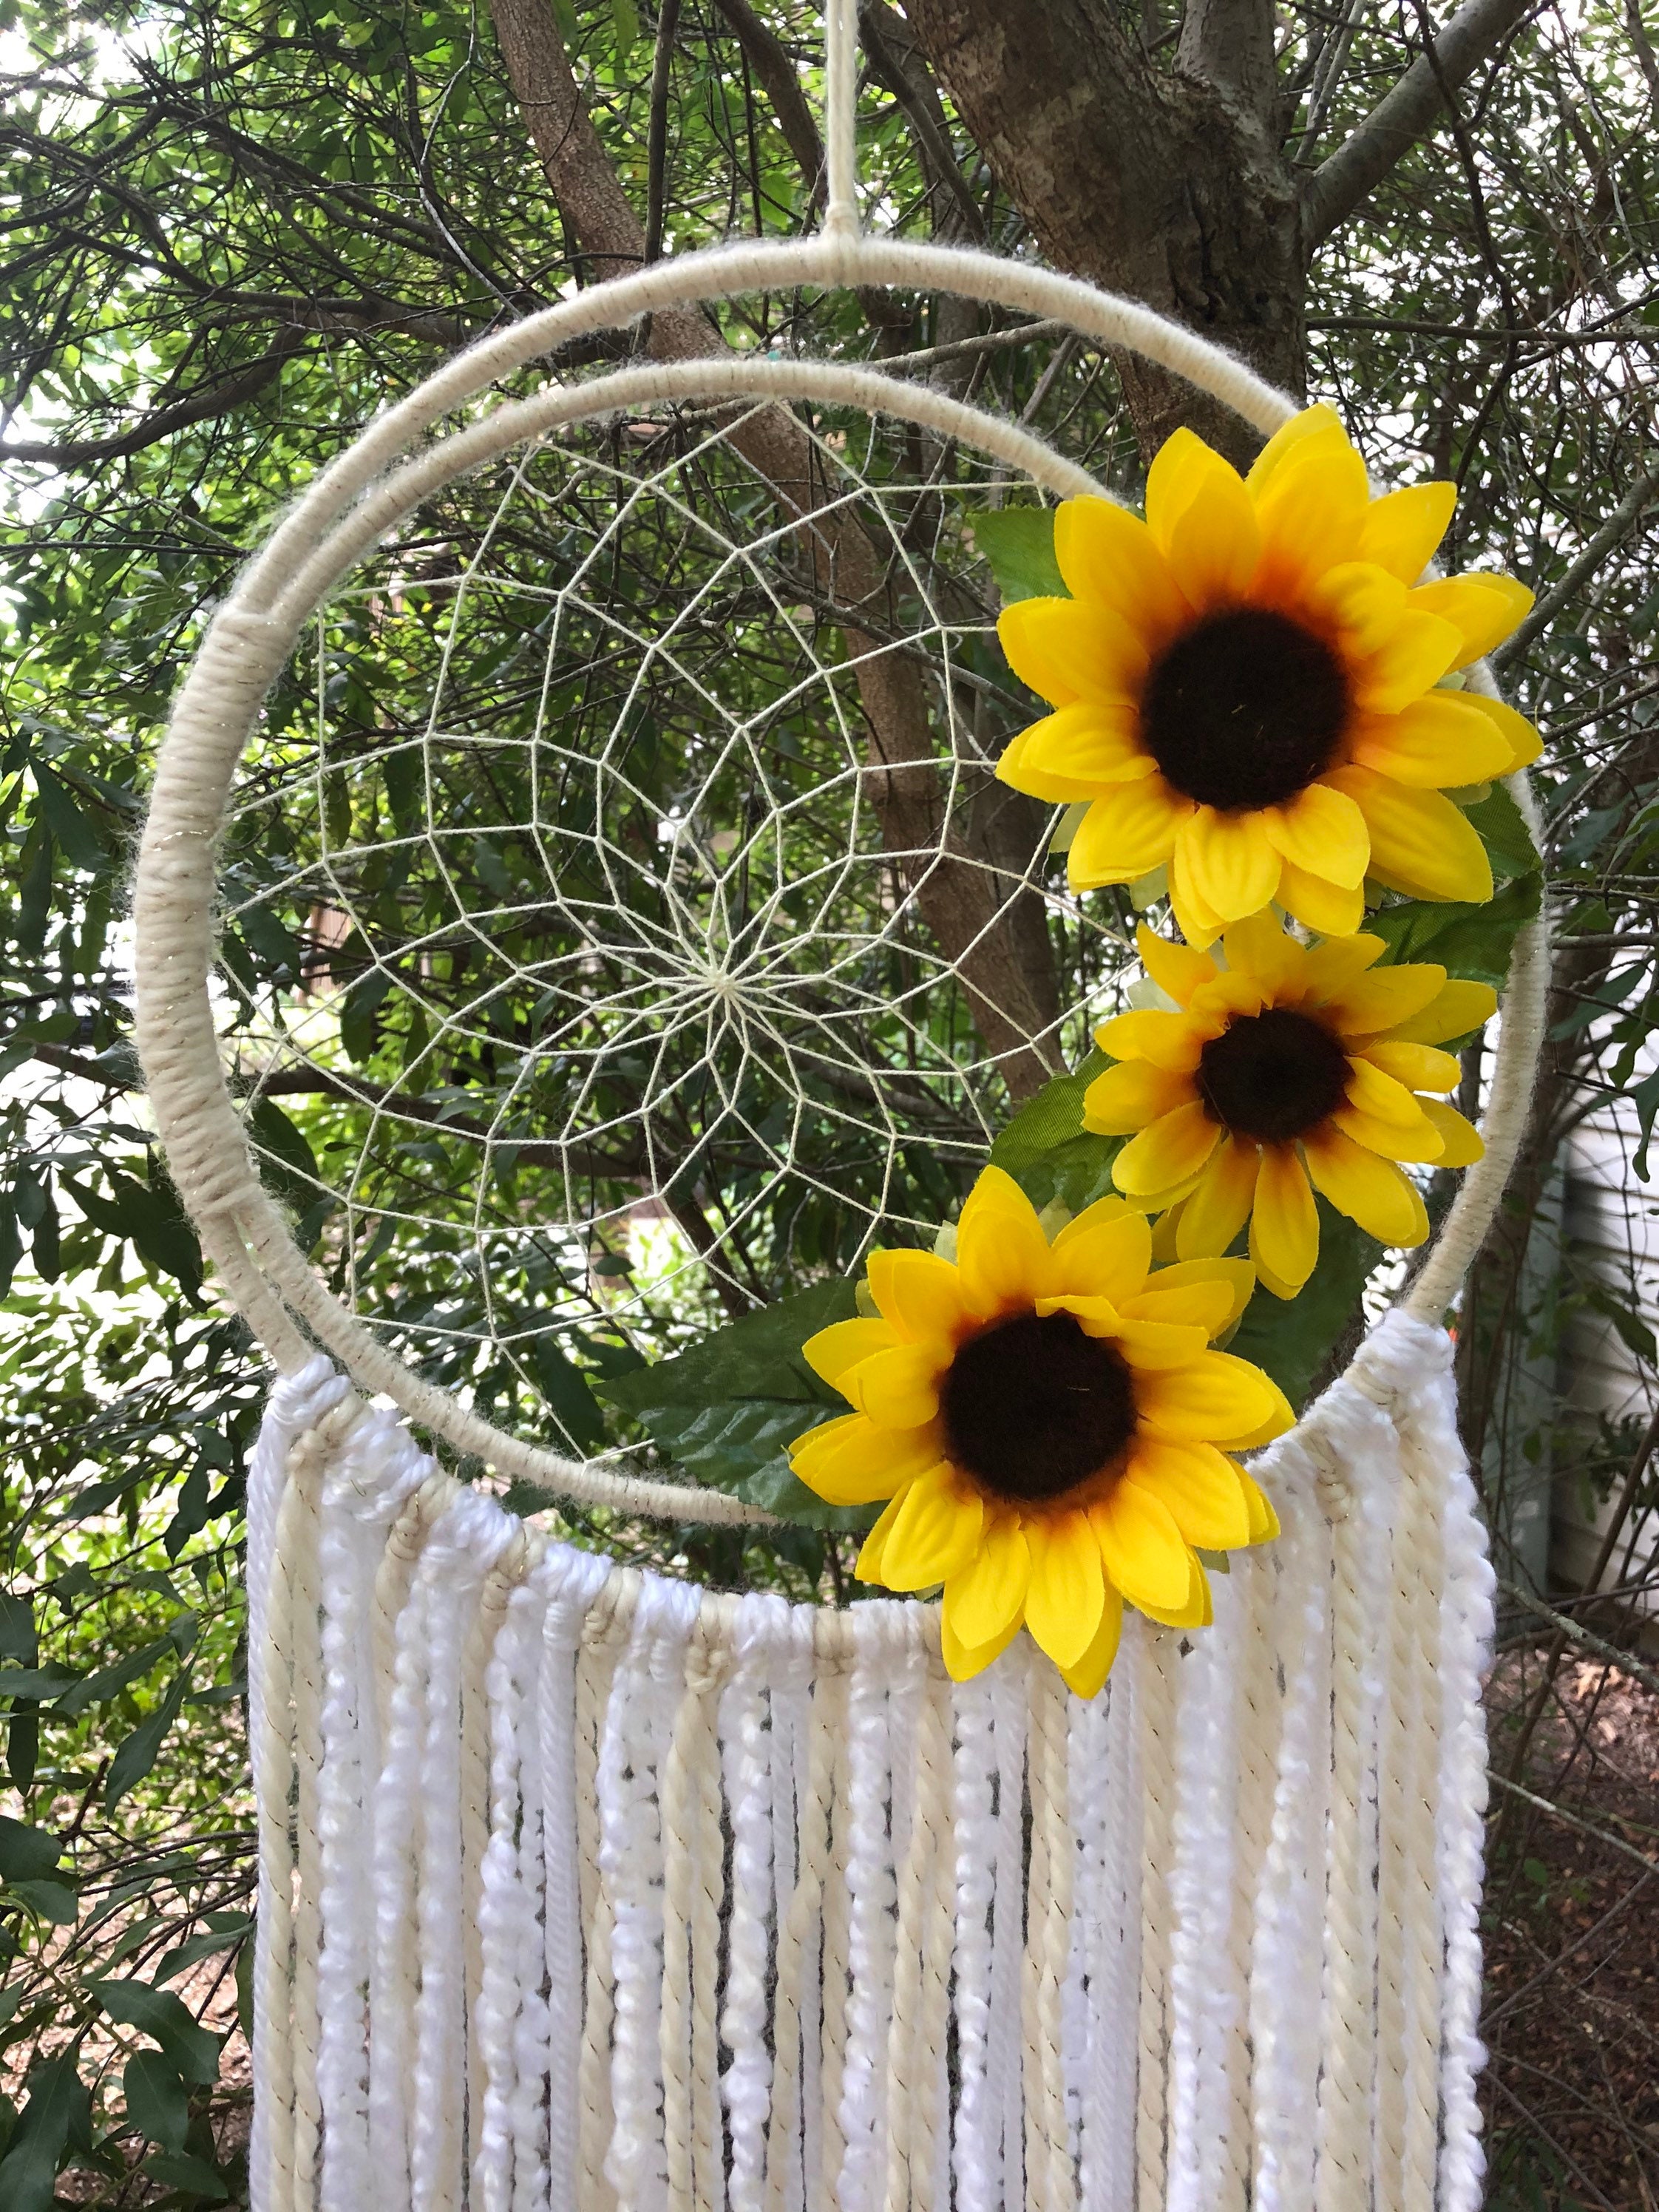 Sunflower Dream Catcher Making Kit